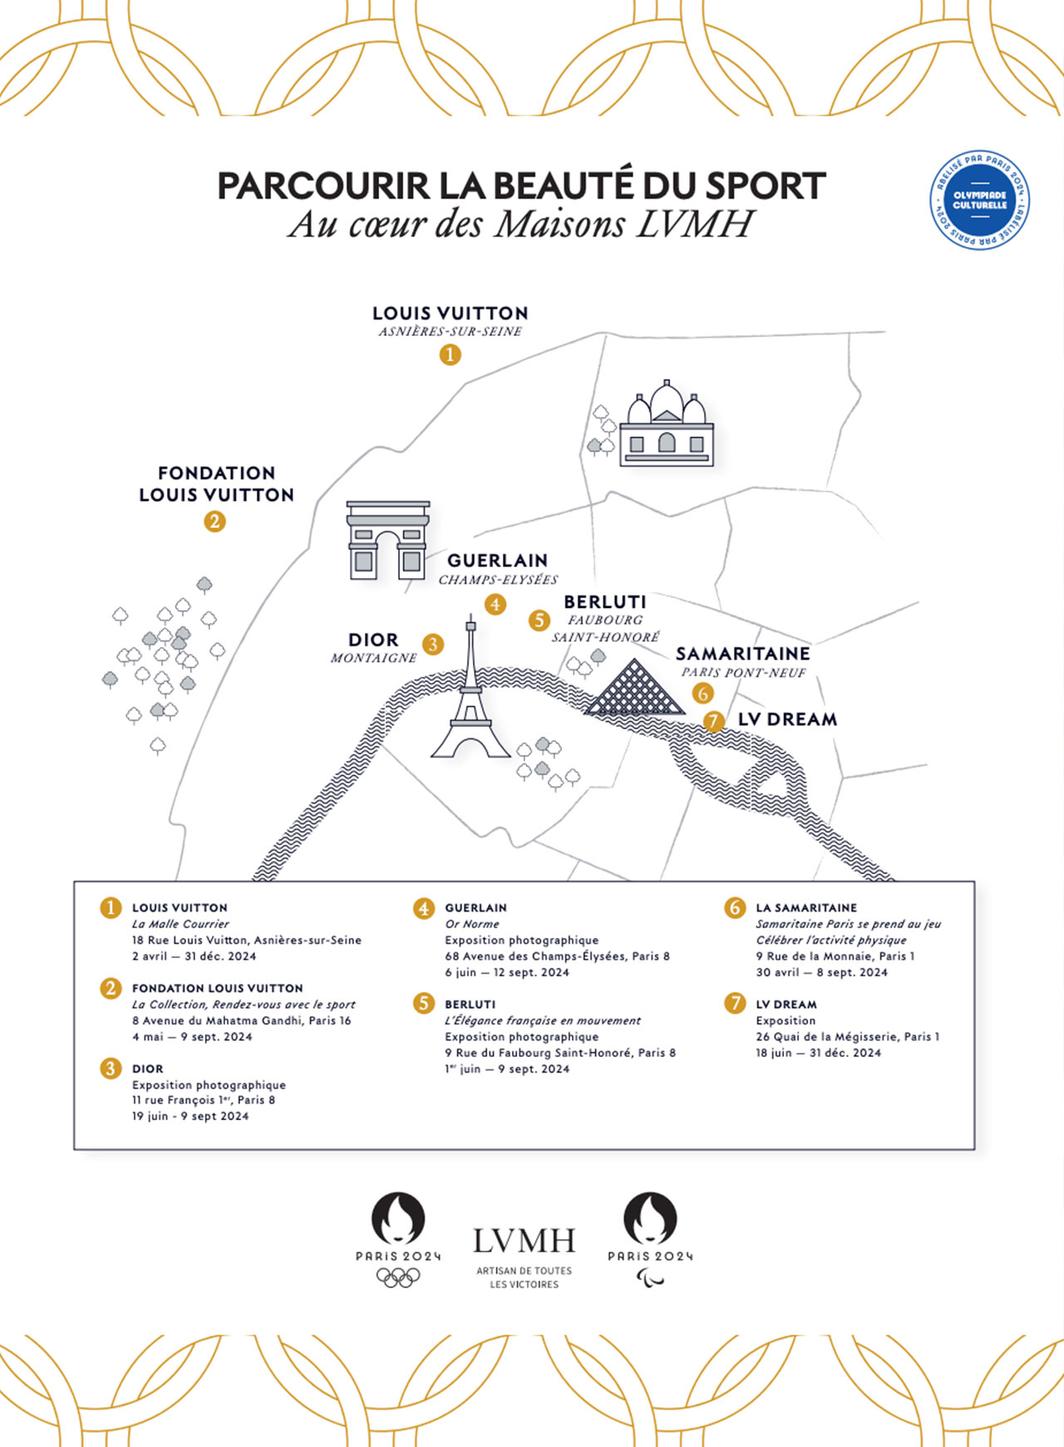 À l'approche de Paris 2024, LVMH lance son Olympiade Culturelle.